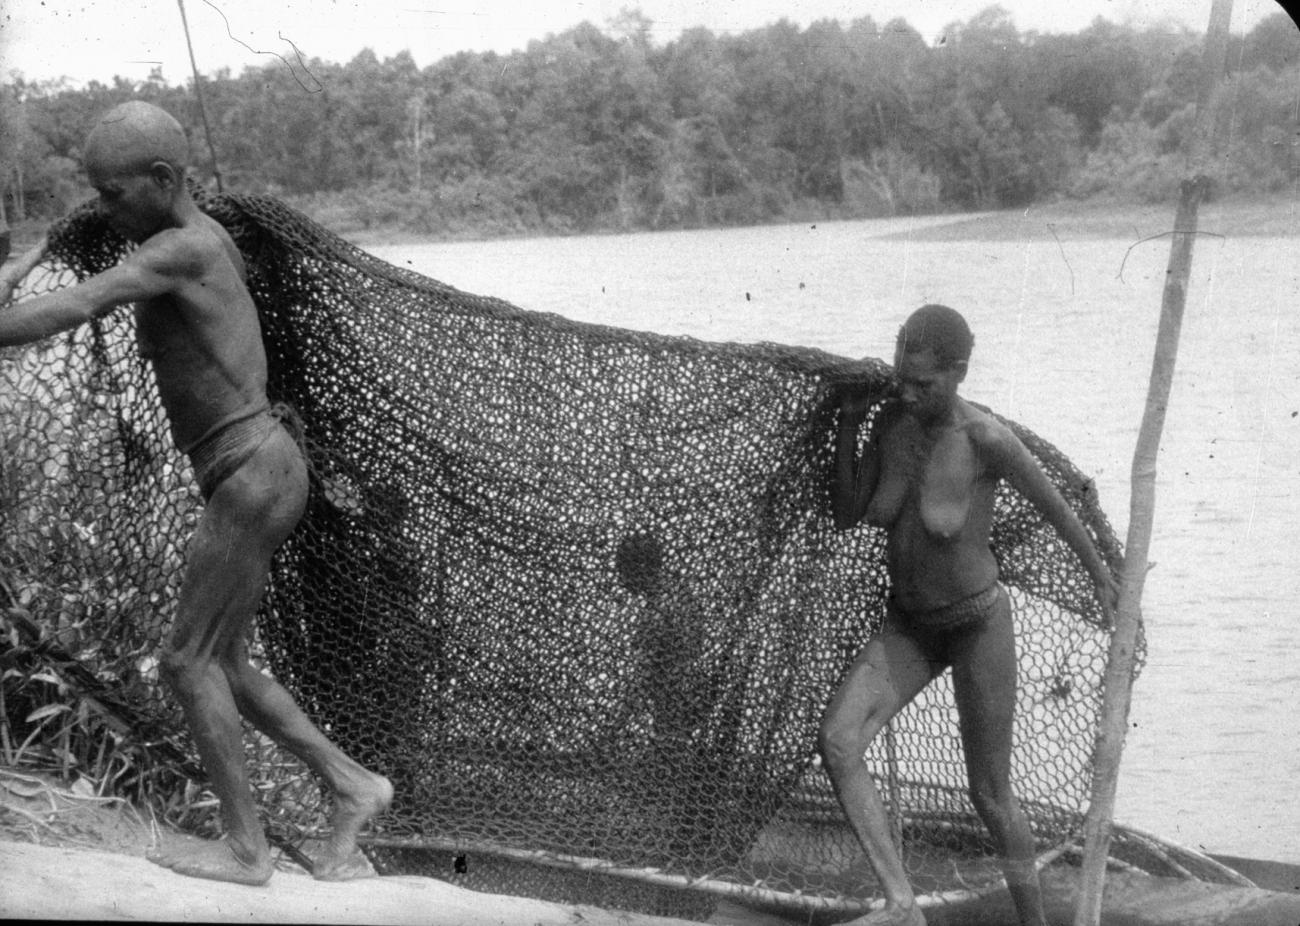 BD/216/227 - 
Vrouwen dragen visnet uit de prauw de rivieroever op
